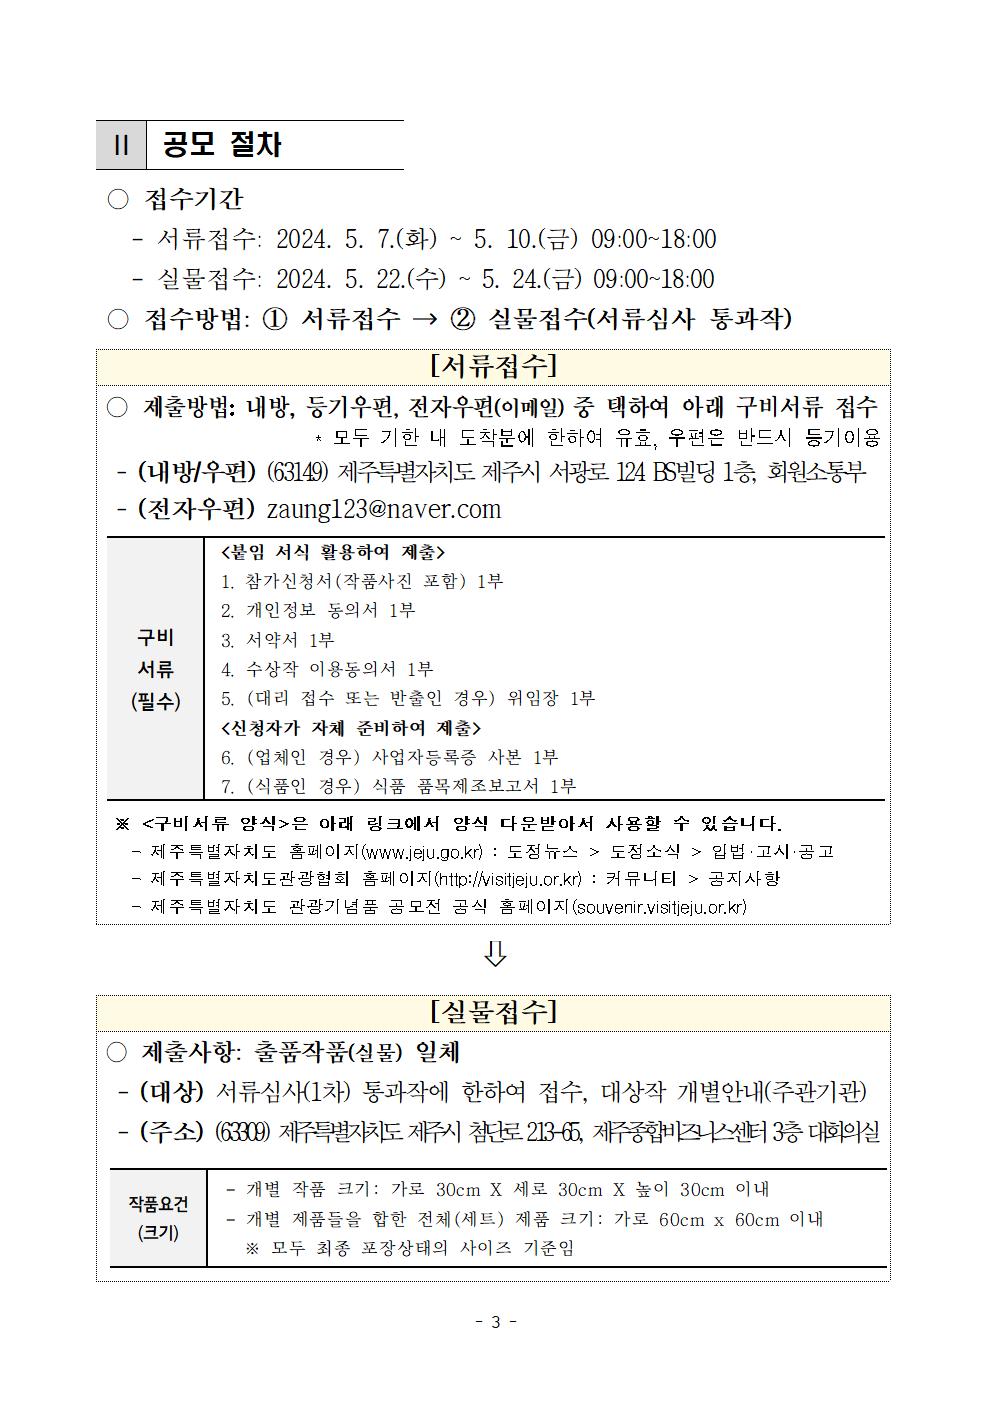 ★(공고) 제27회 제주특별자치도 관광기념품 공모전 개최 공고003